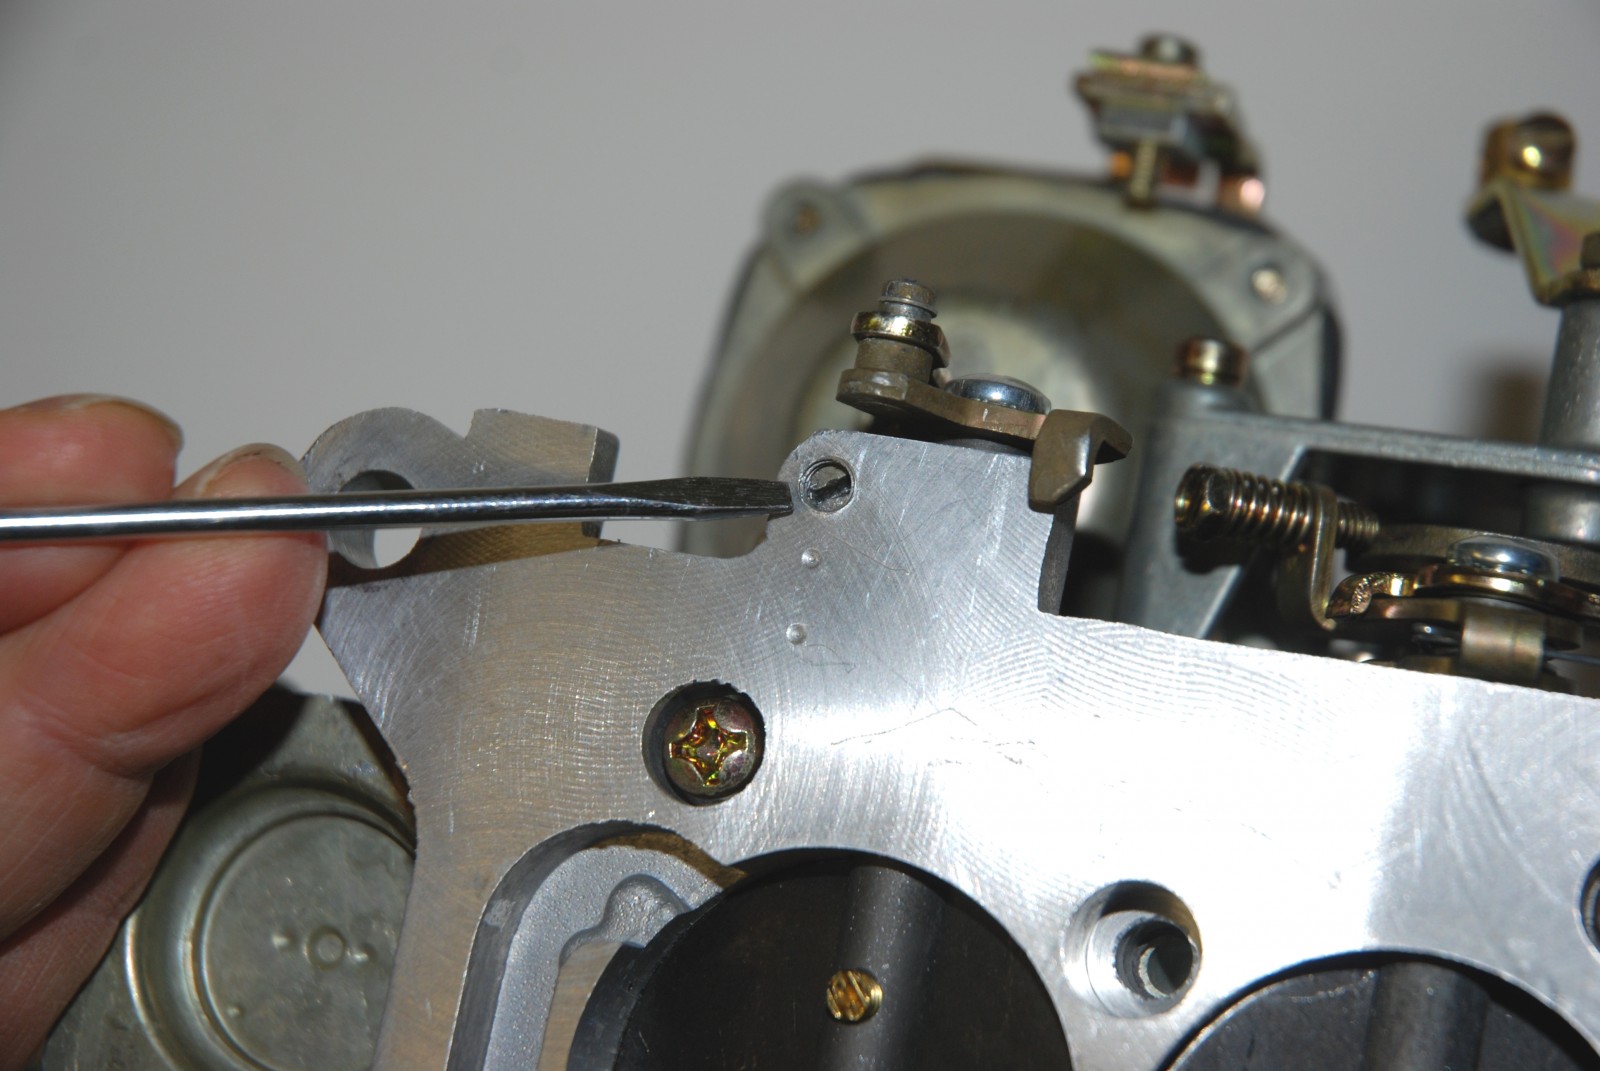 Carburetor Air Fuel Mixture Screw + Idle Speed Adjustment Screw